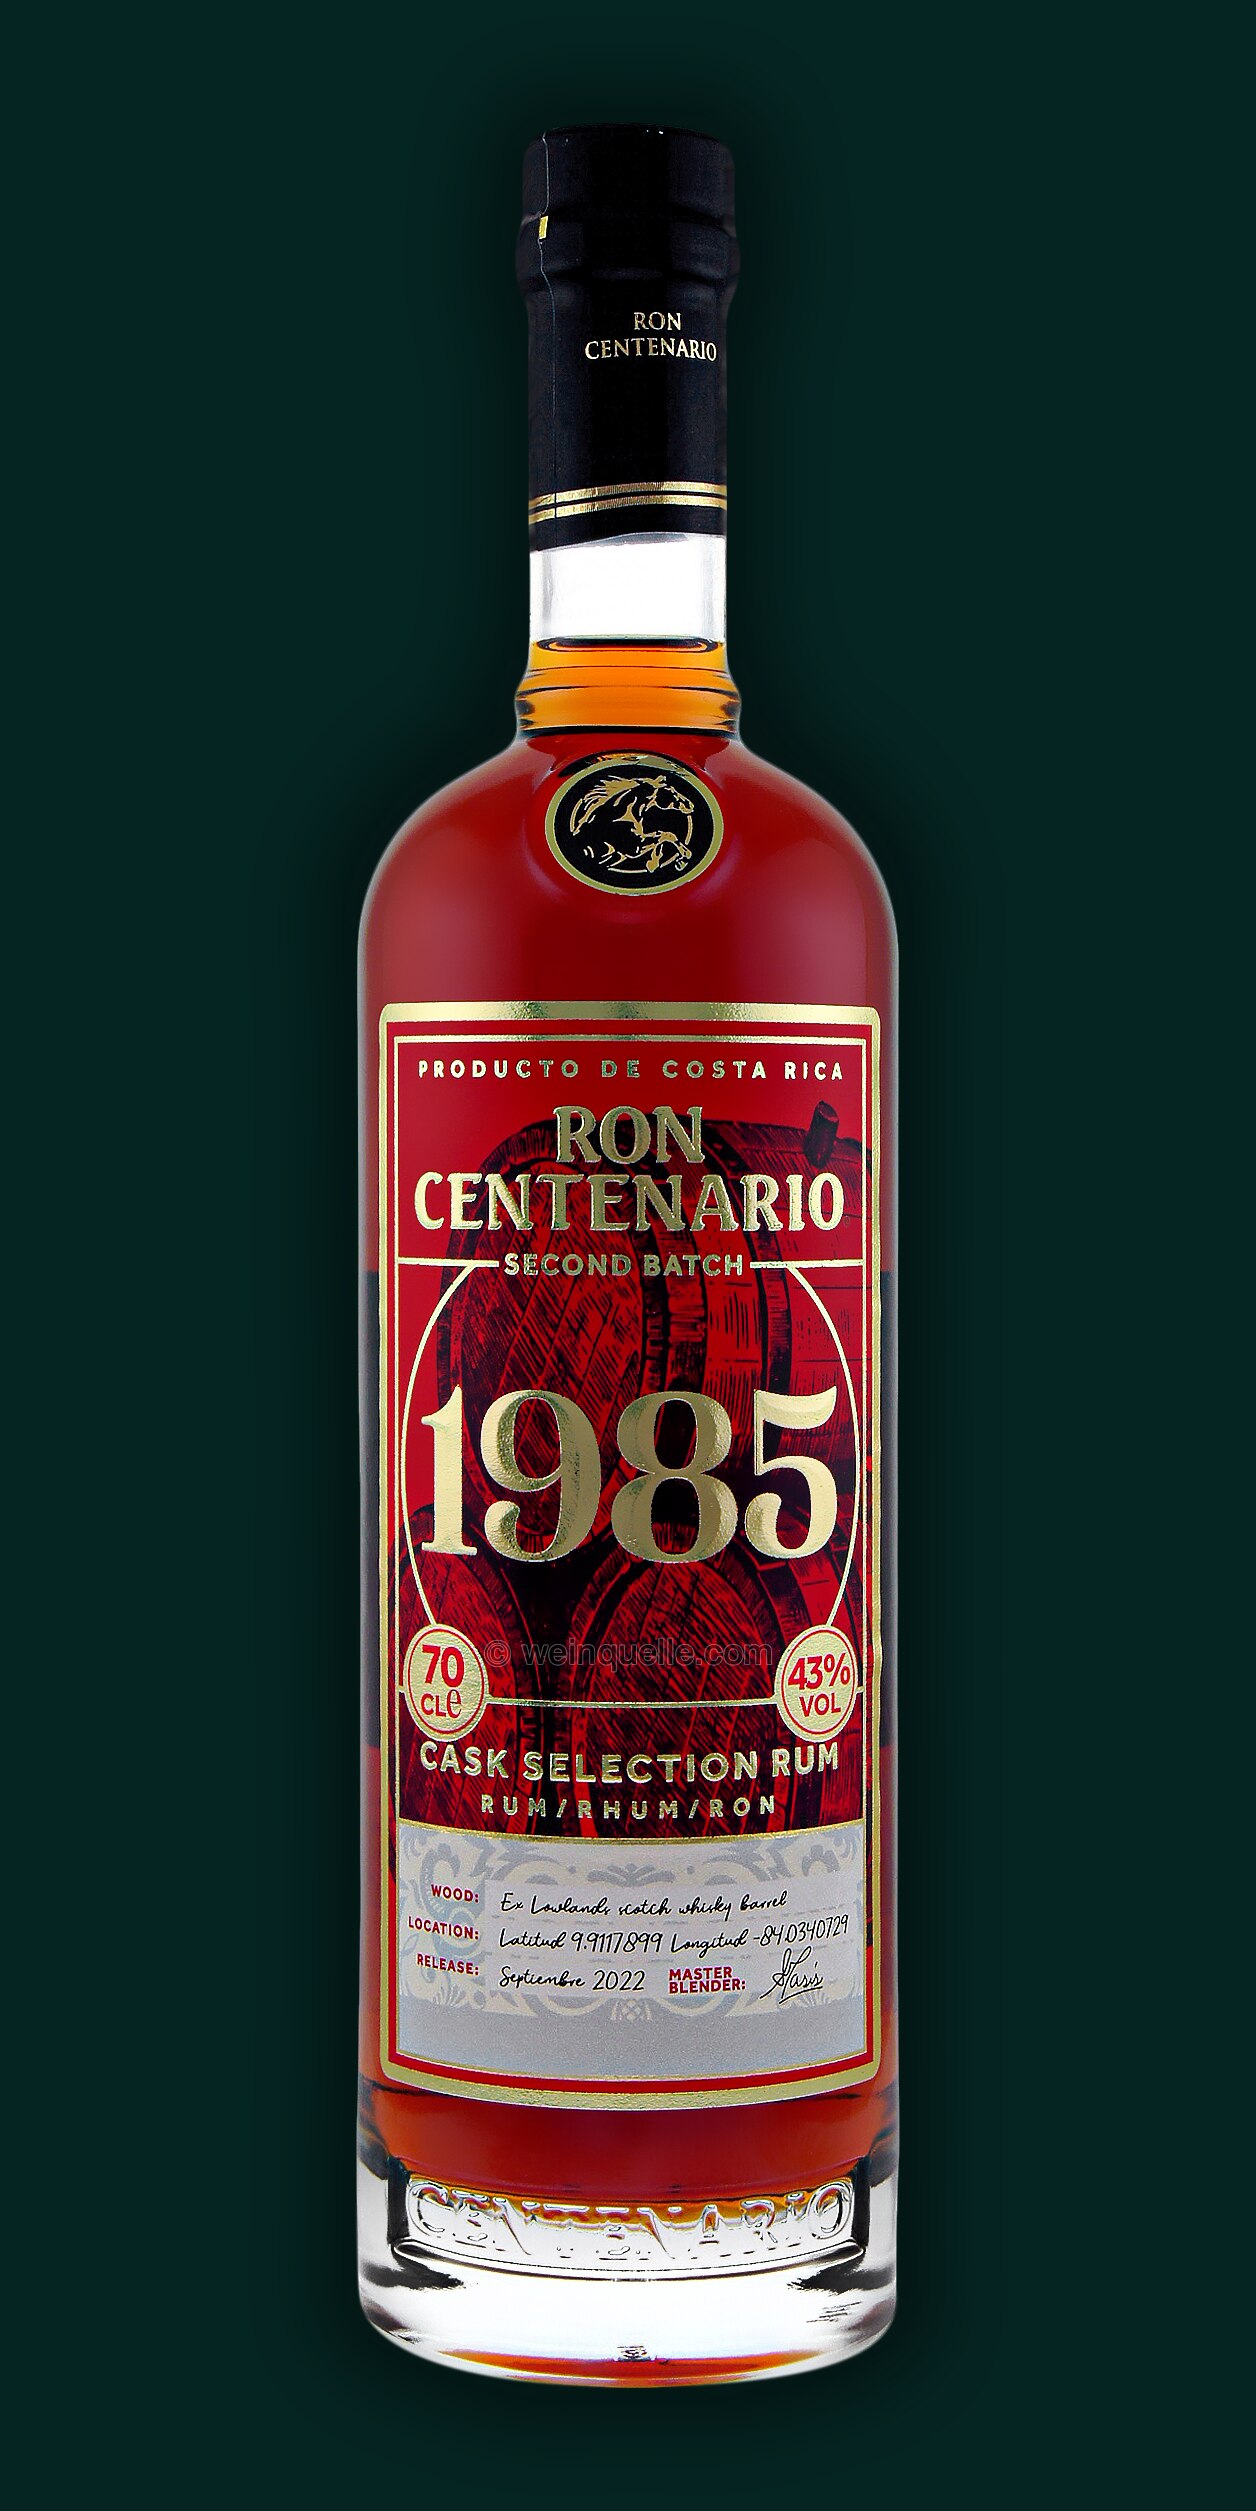 Ron Centenario € - Second Batch, Lühmann Weinquelle 41,90 1985